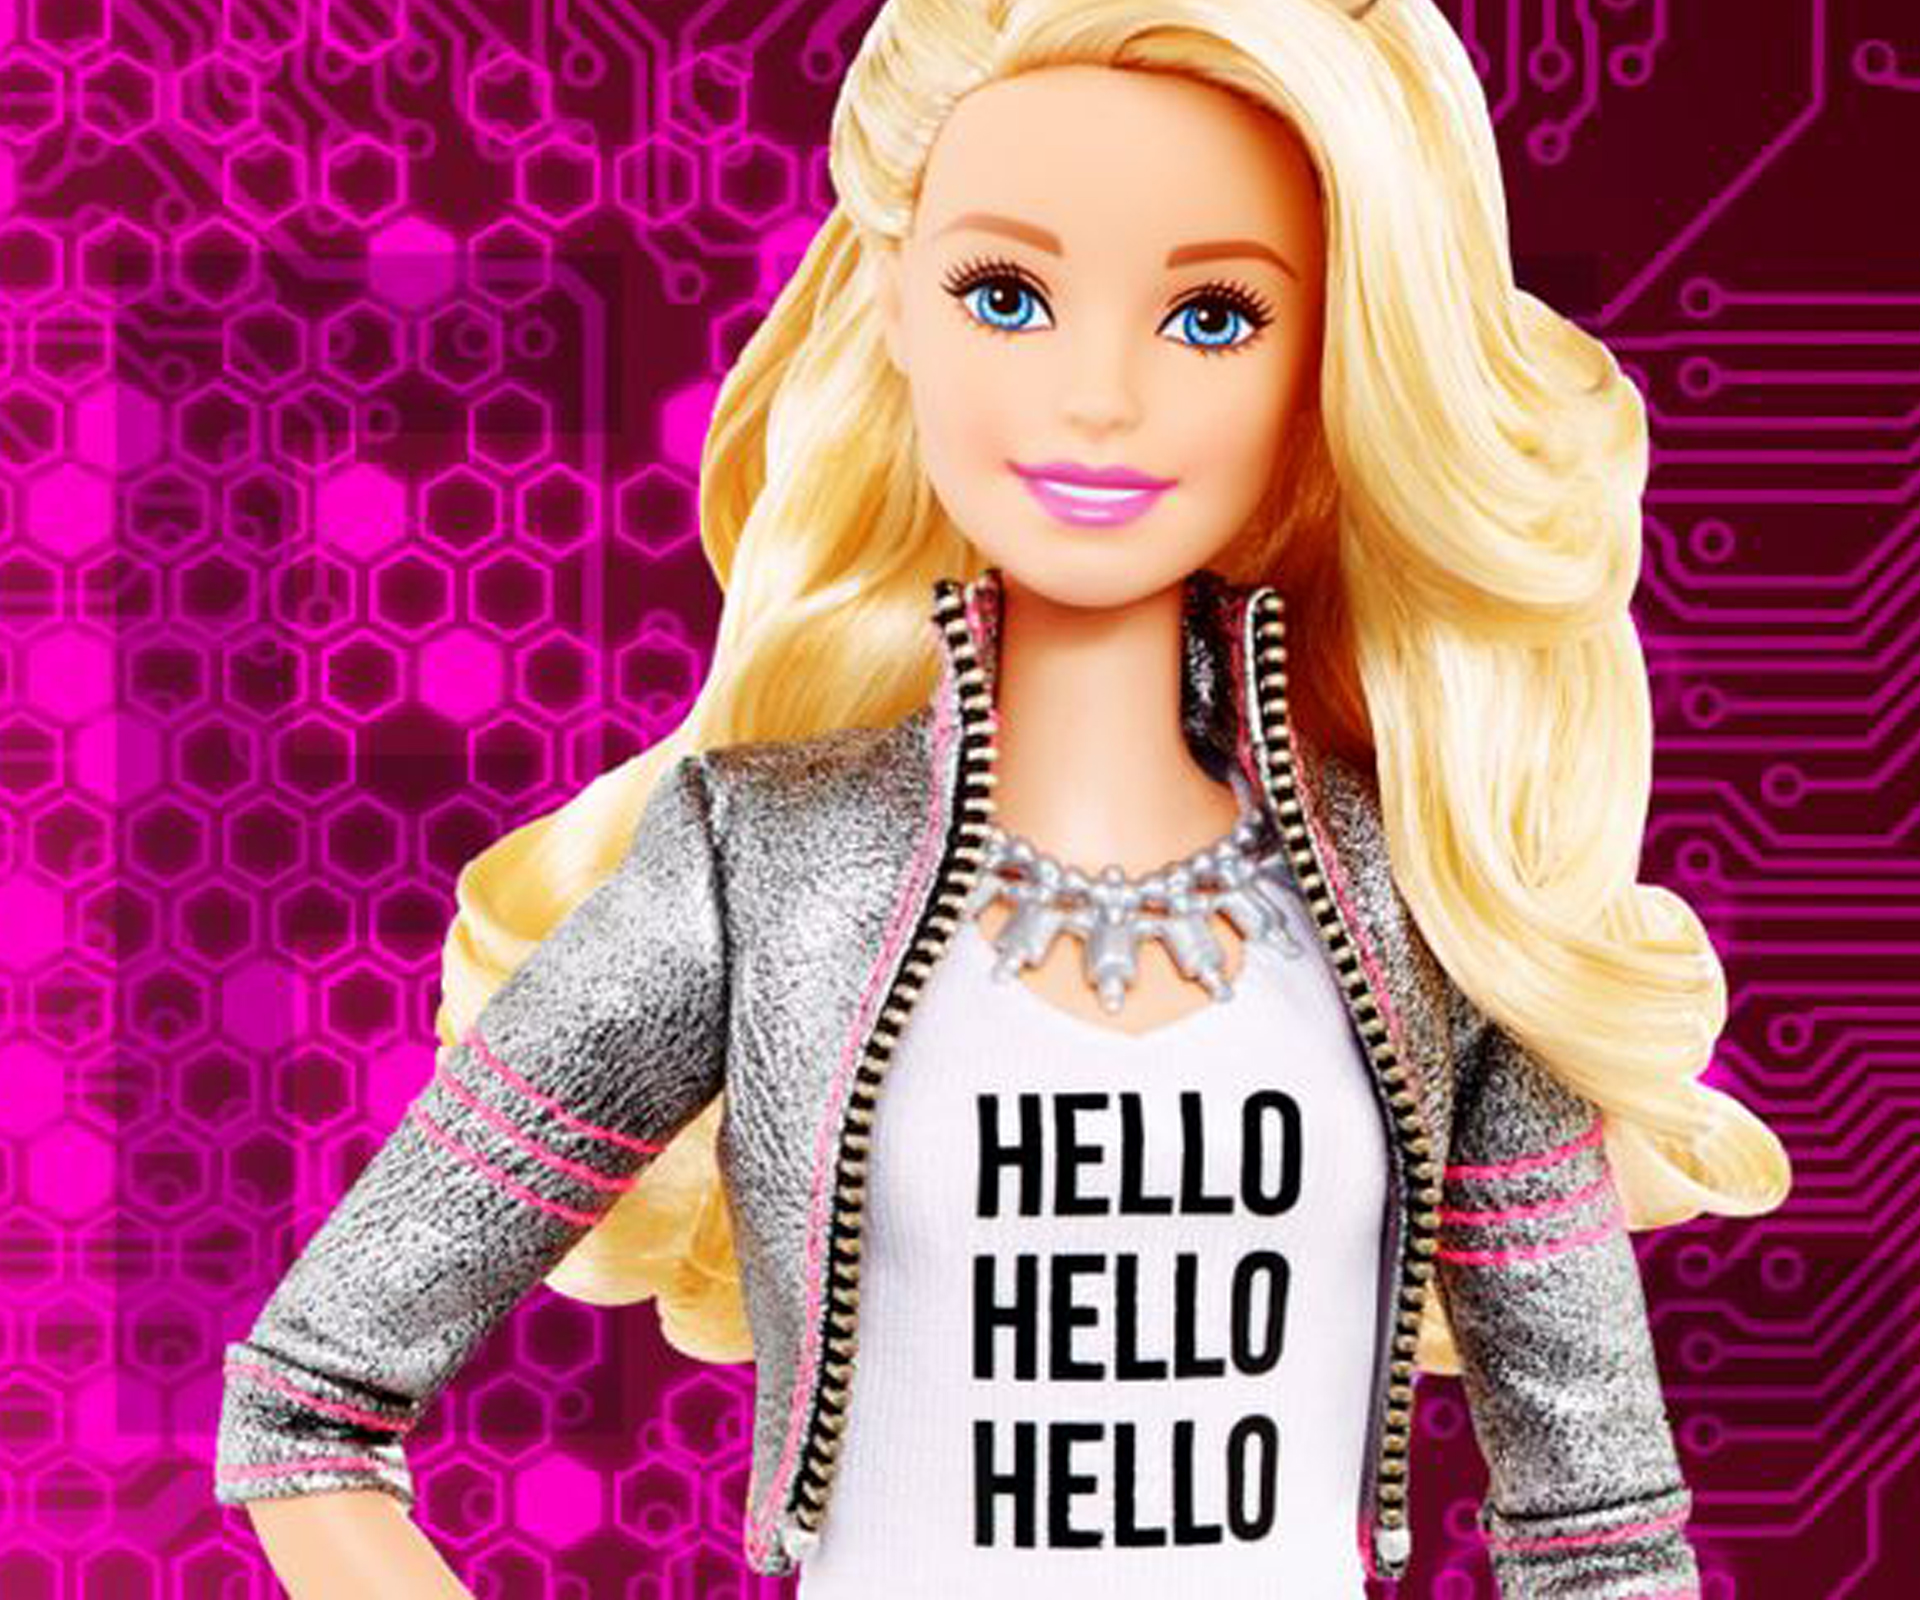 Talking Barbie last bid to save declining doll sales